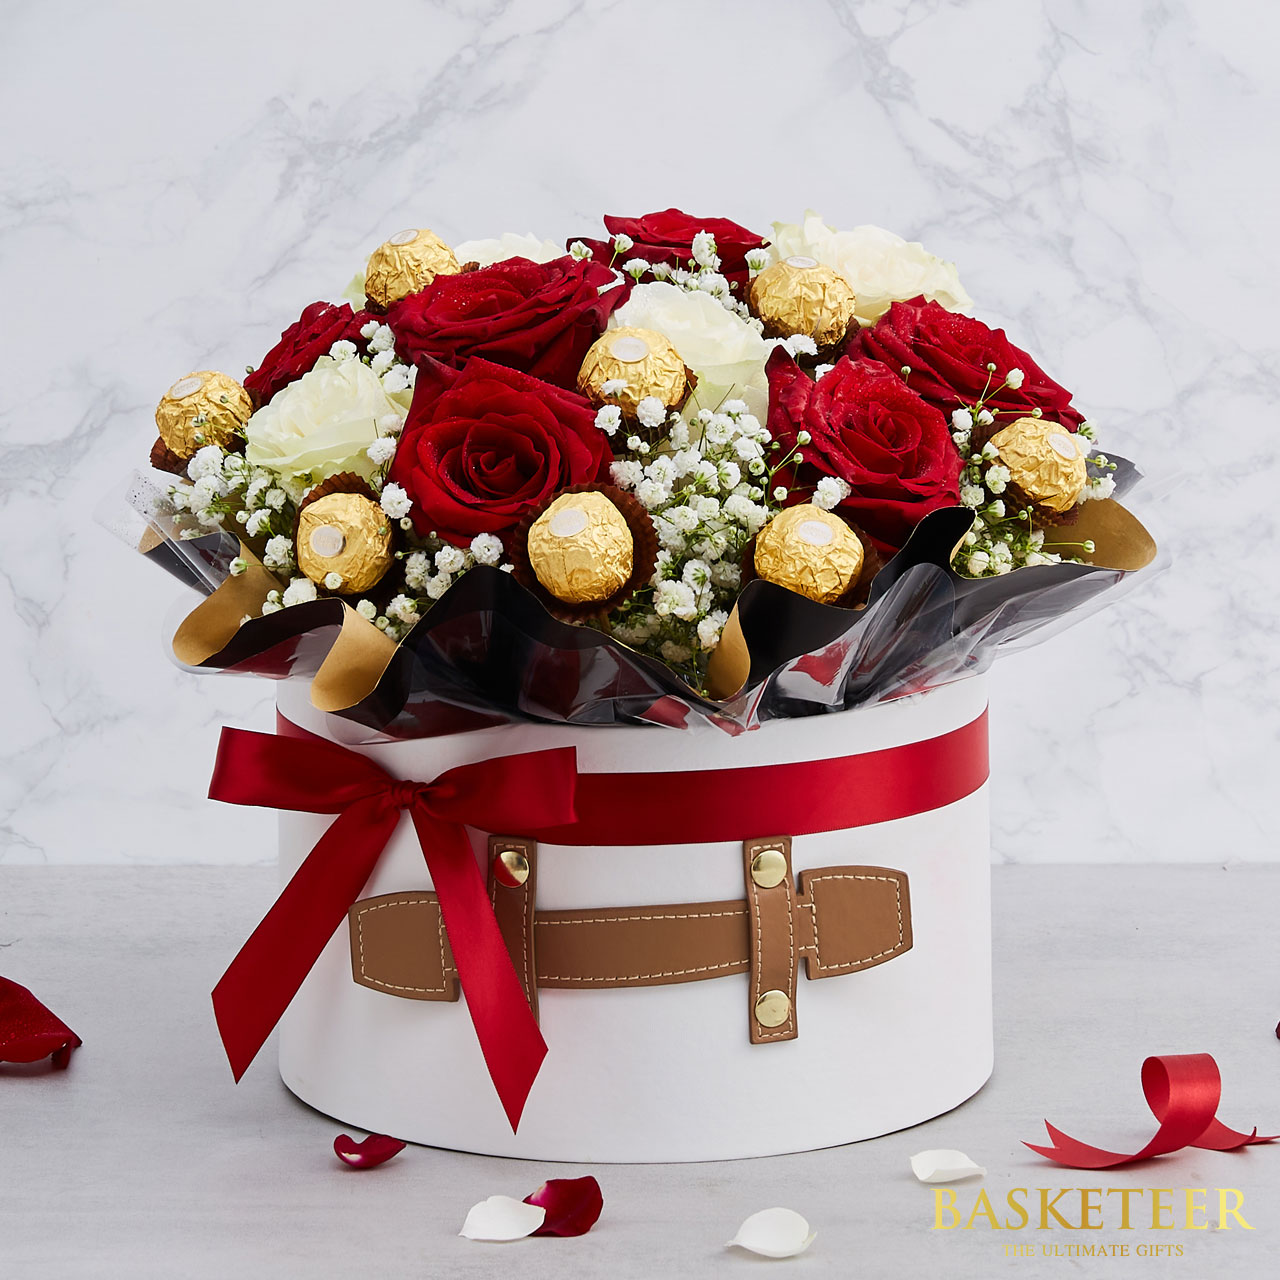 Chocolate & Flowers Gift Box